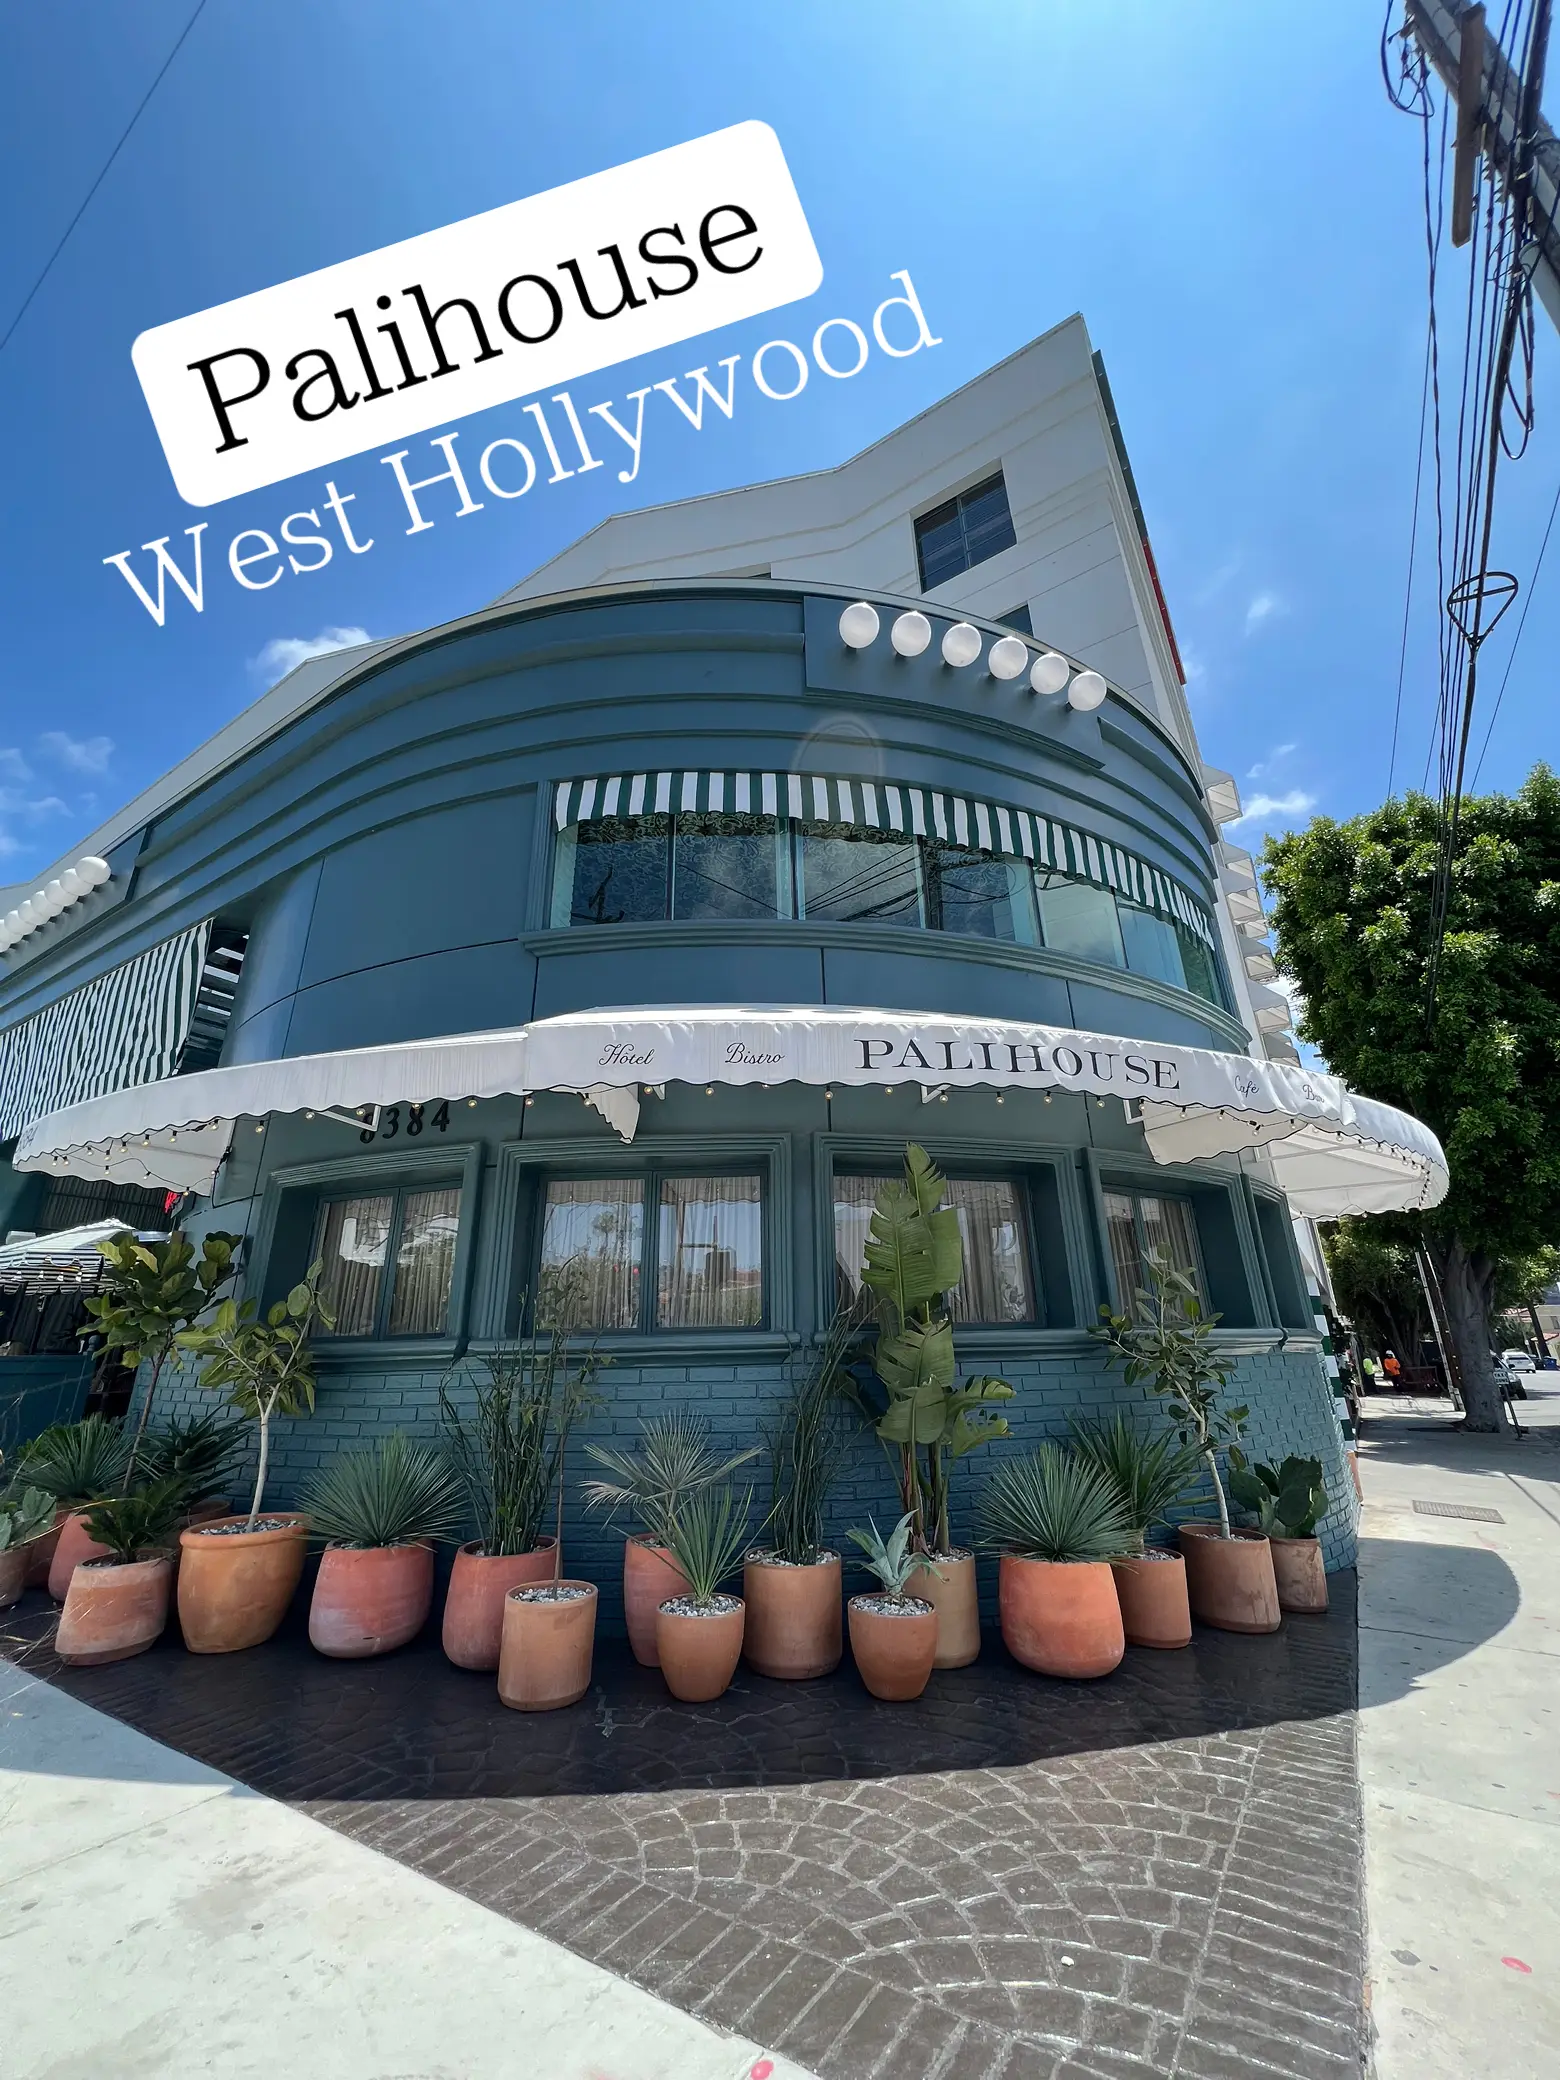 Palihouse West Hollywood